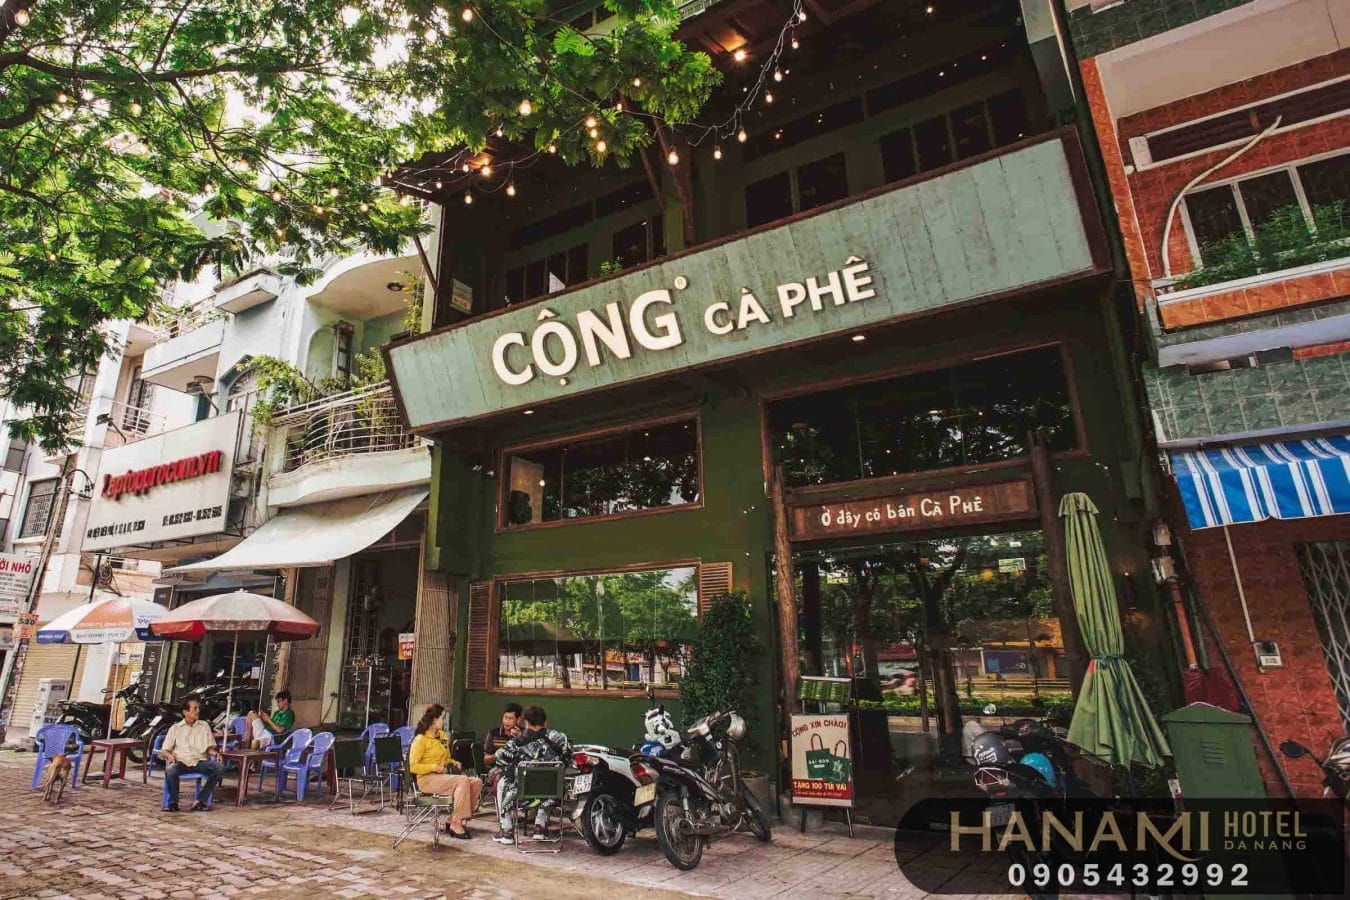 quán cafe 24h tại Đà Nẵng